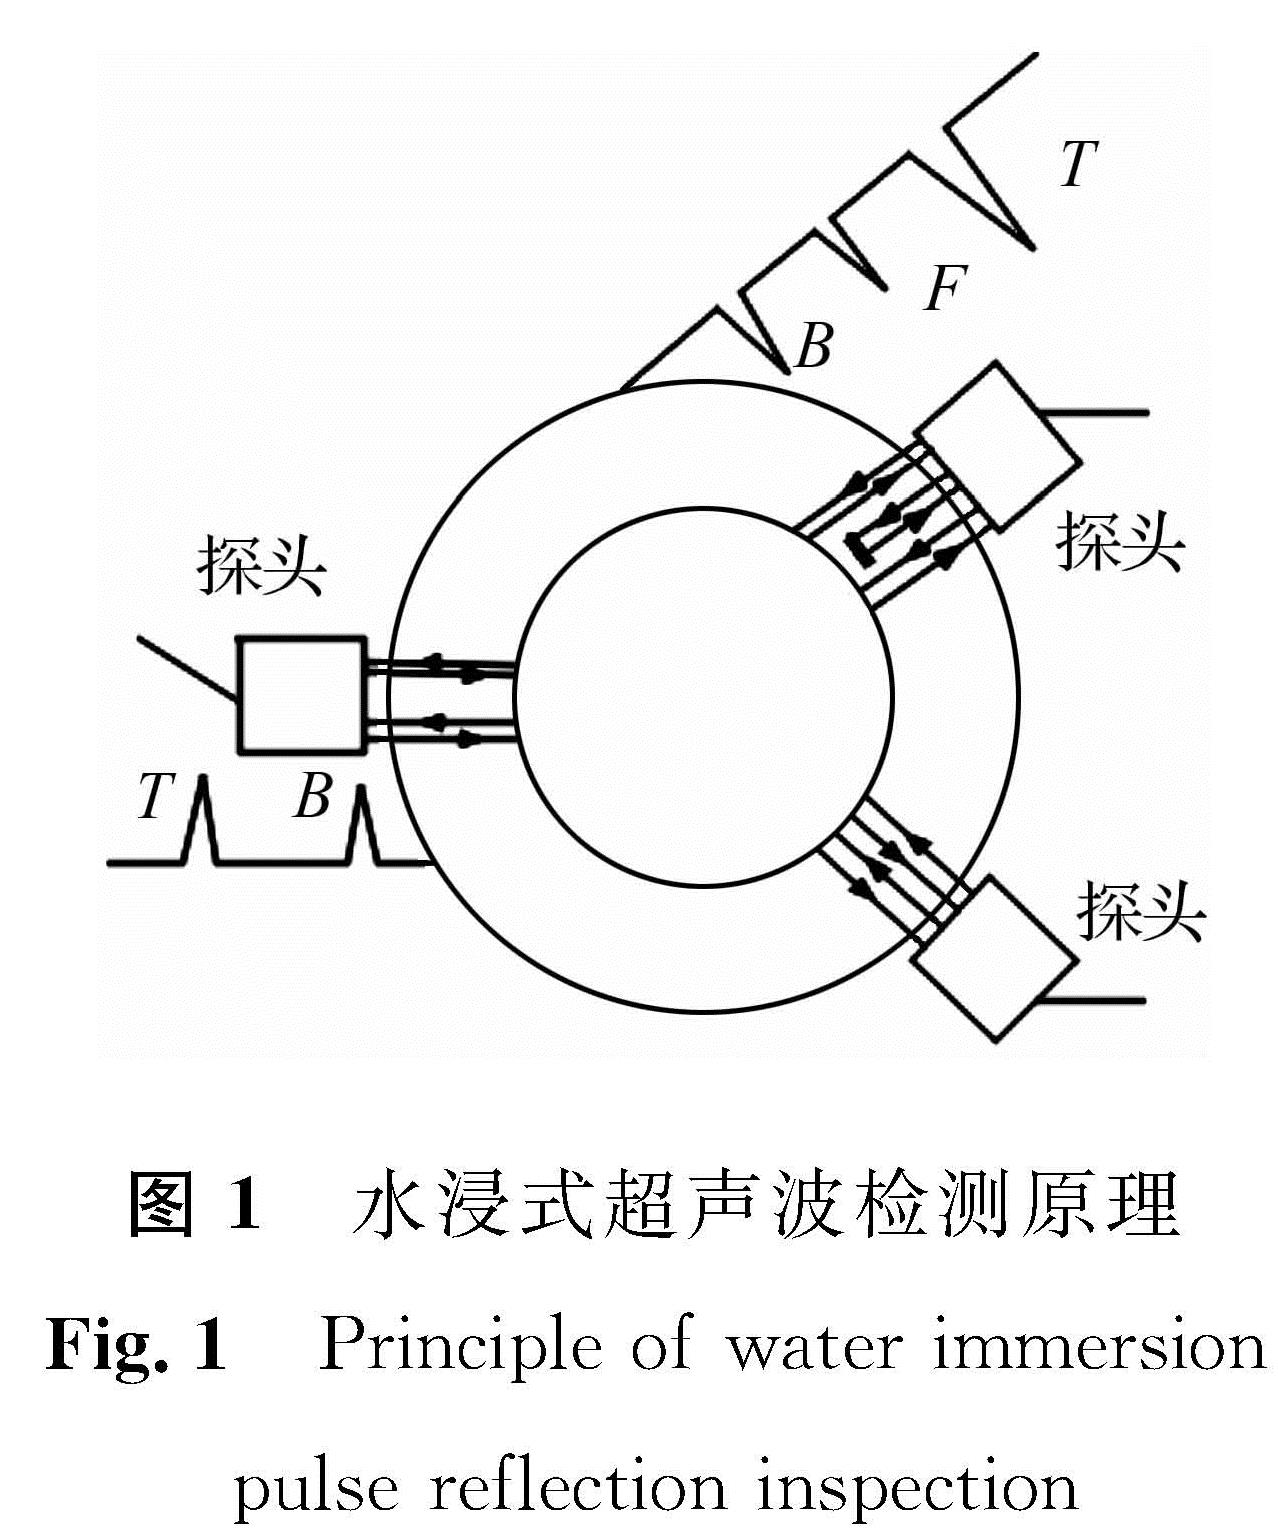 图1 水浸式超声波检测原理<br/>Fig.1 Principle of water immersion pulse reflection inspection